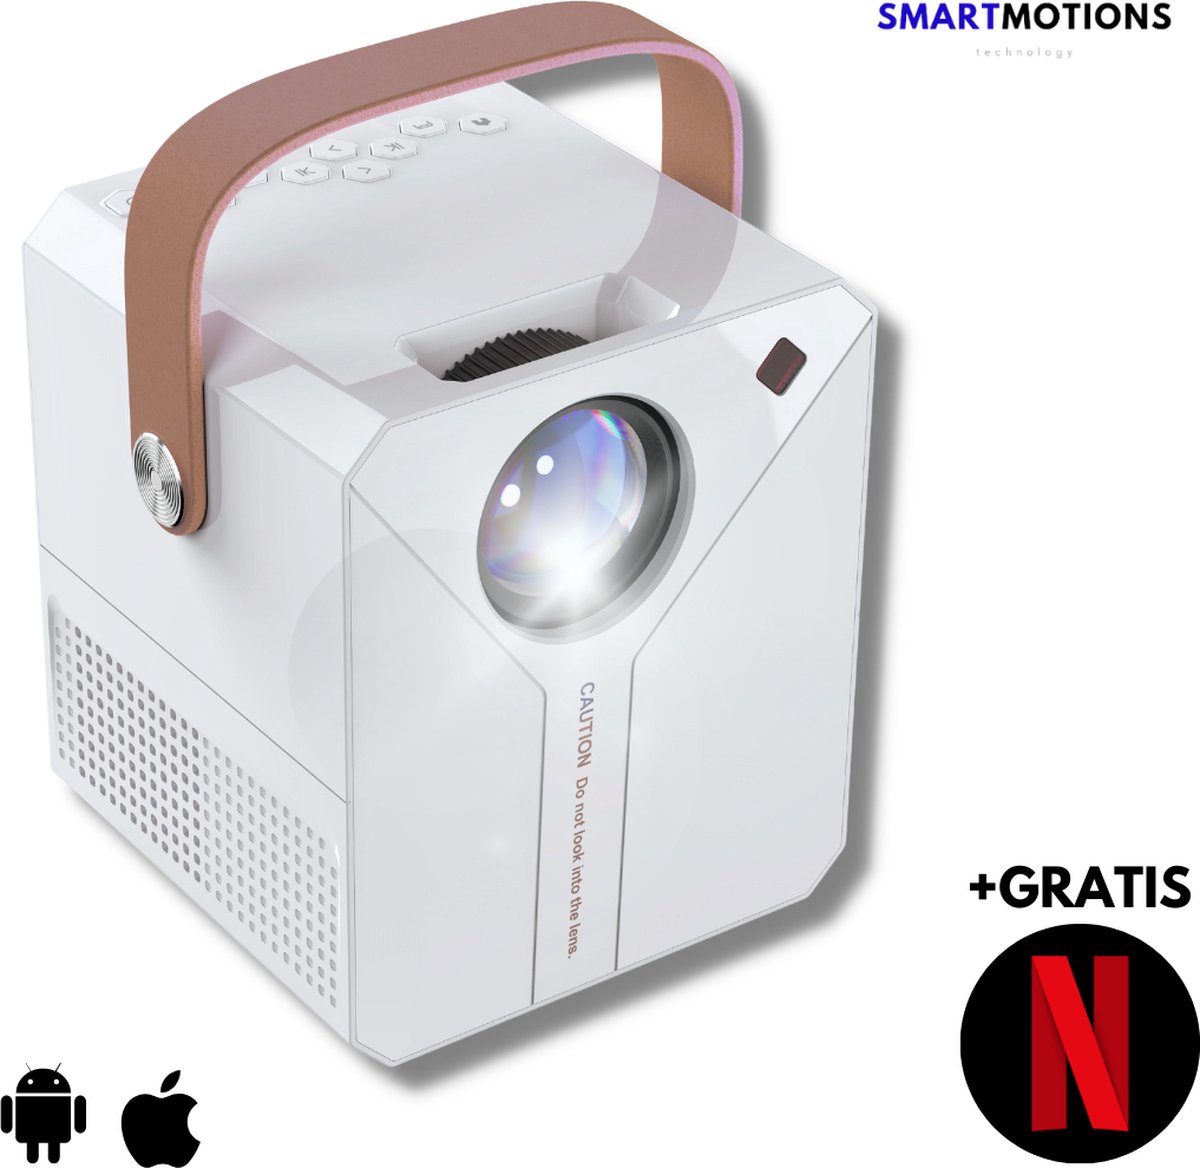 SmartMotions Beamer - Draagbare Projector - 6000 Lumen - Streamen met telefoon, via Wifi - GRATIS Netflix voor 3 maanden